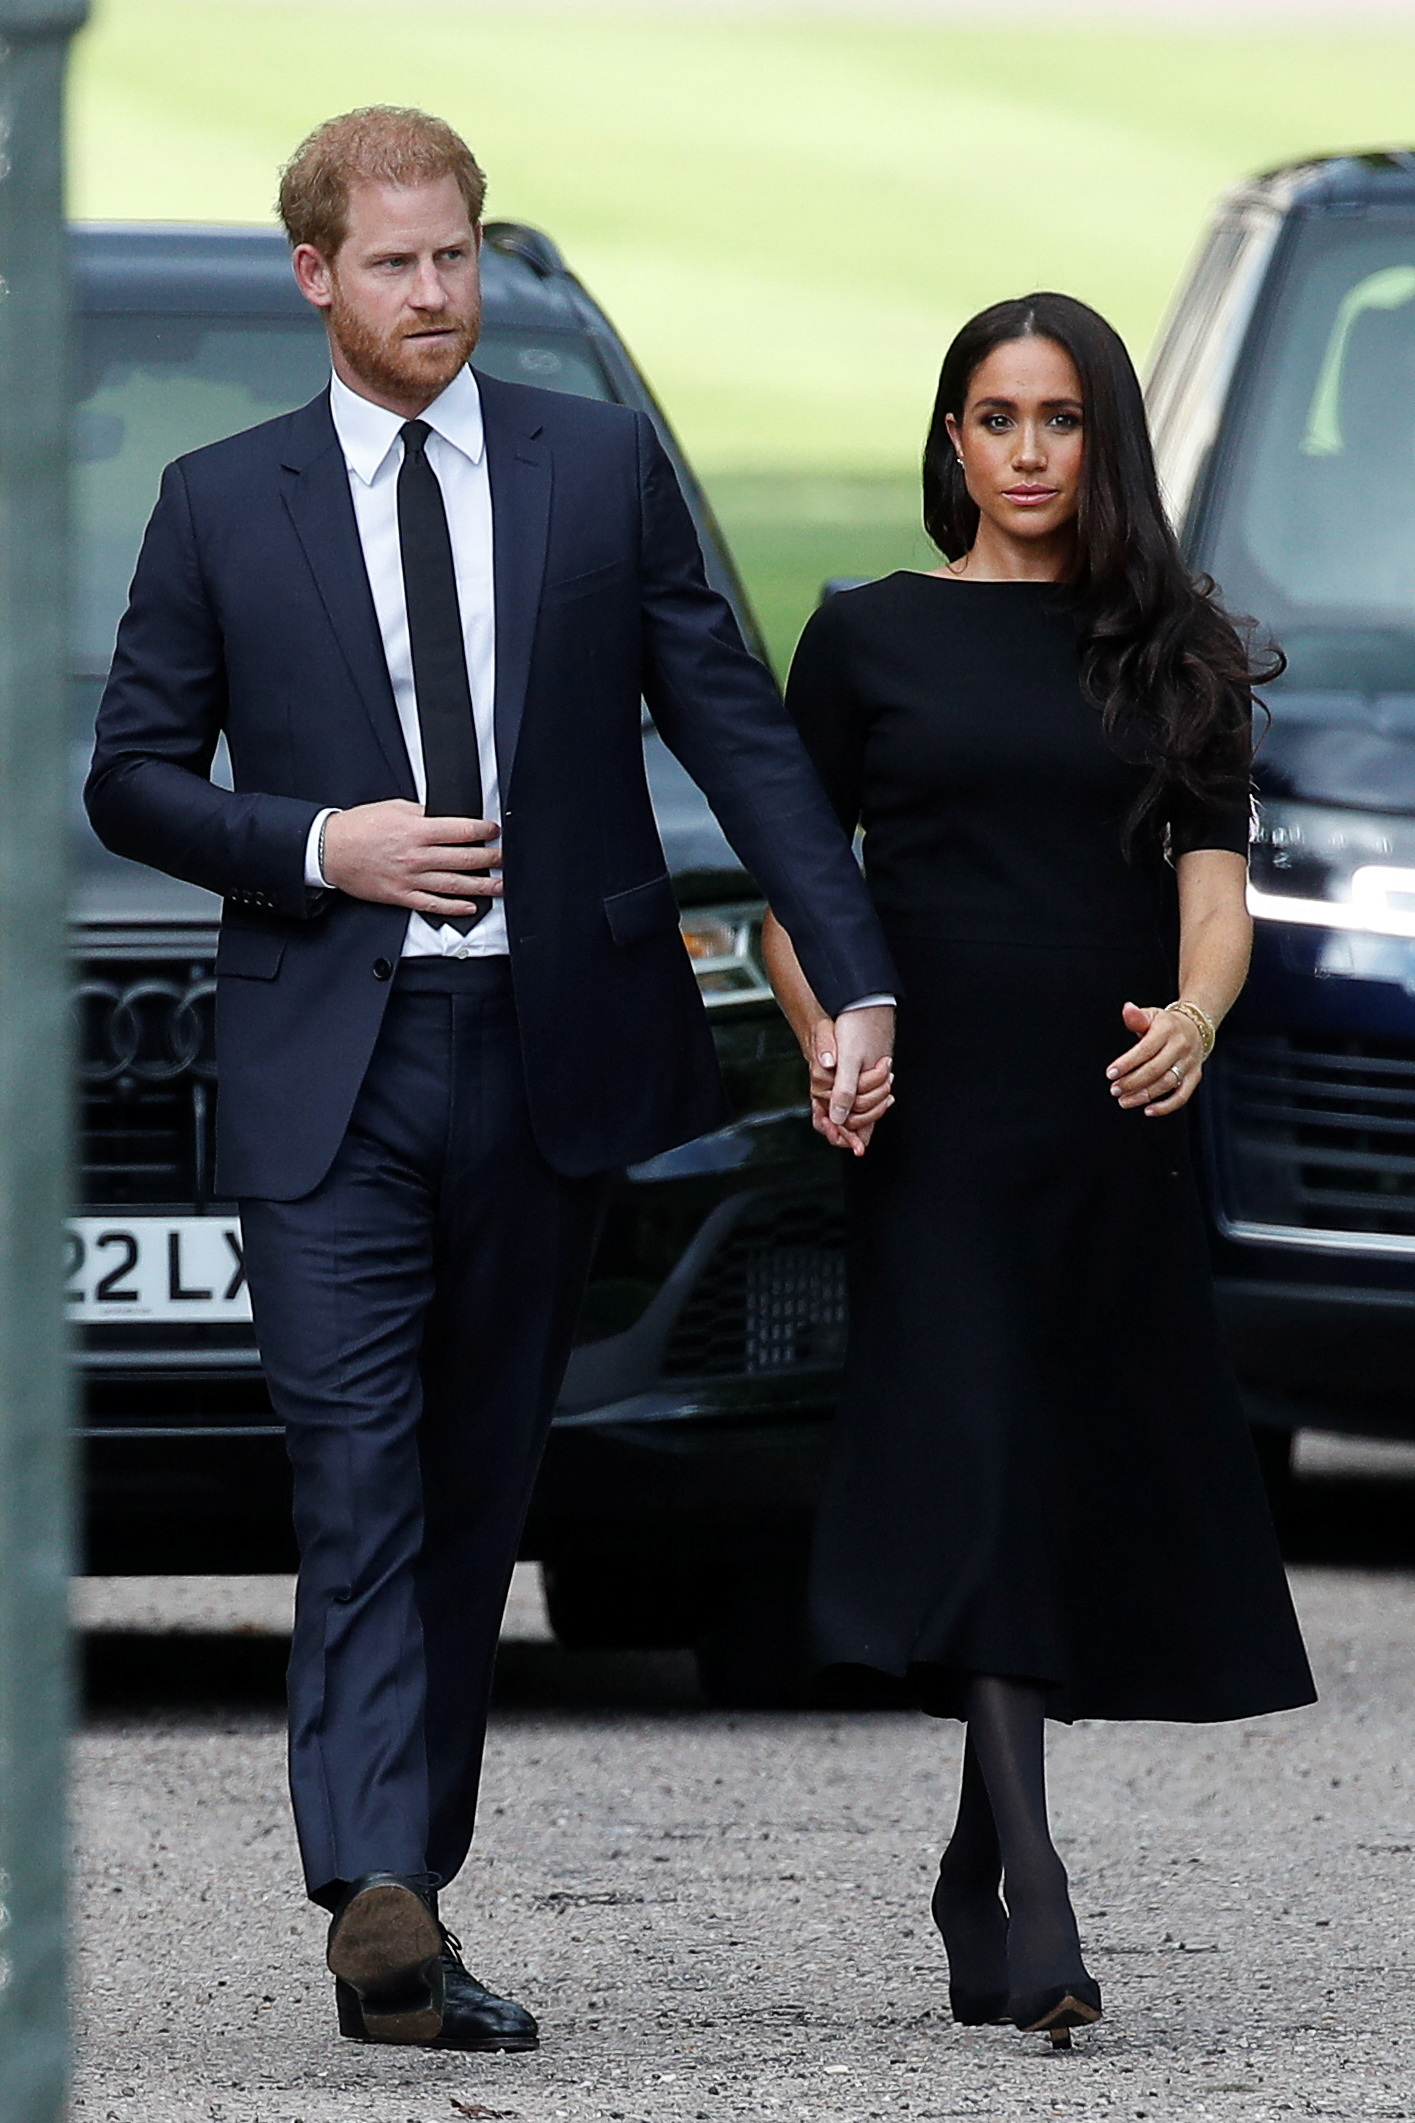 El príncipe Harry y Meghan, la duquesa de Sussex, caminan fuera del castillo de Windsor, luego del fallecimiento de la reina Isabel, en Windsor, Gran Bretaña (Reuters)